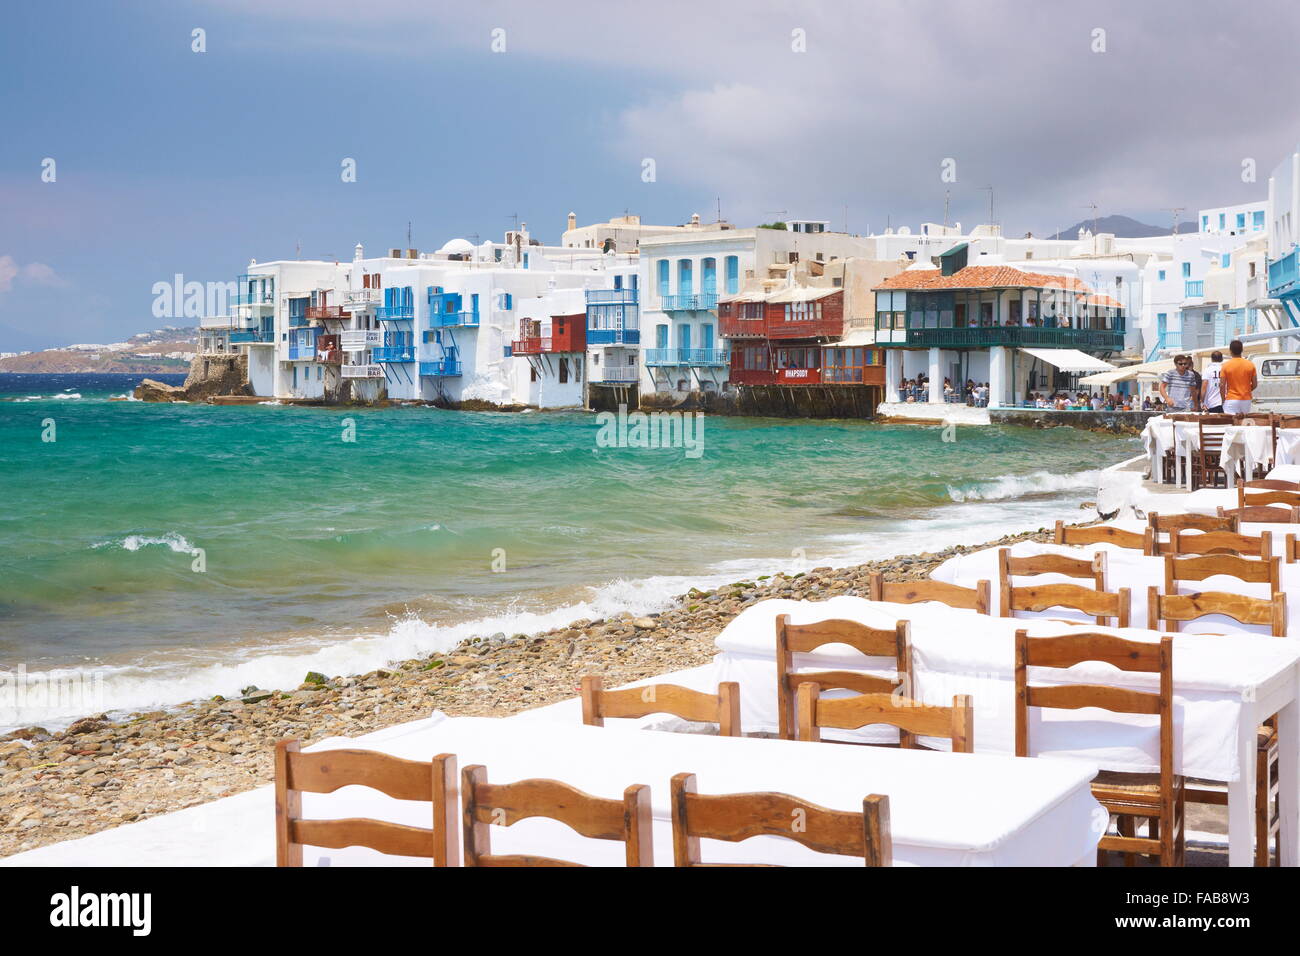 Piscine en plein air à l'île de Mykonos, Cyclades, Grèce Banque D'Images